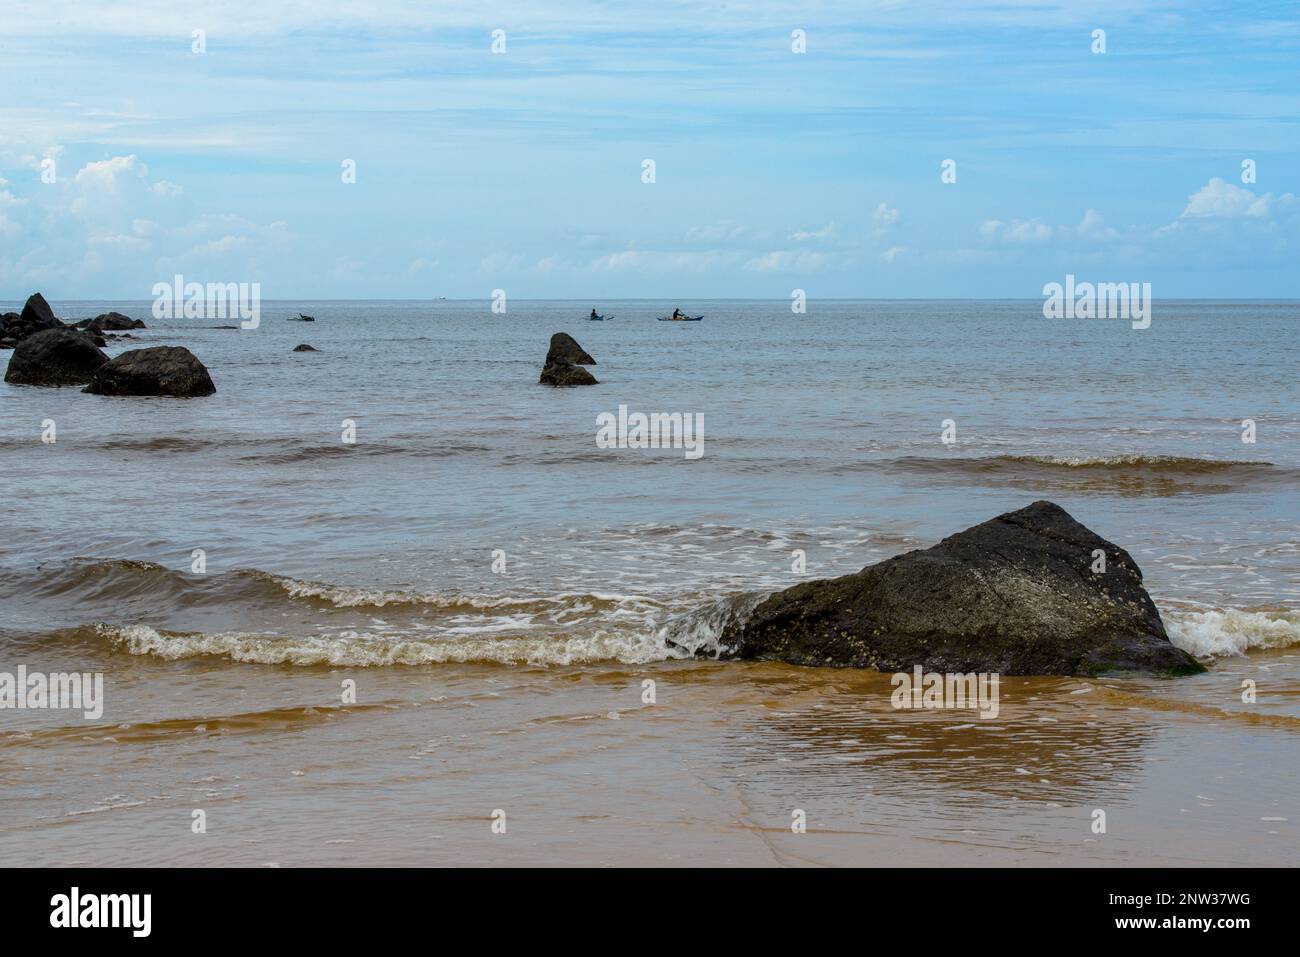 La photo capture une vue à couper le souffle d'une plage sereine avec des eaux cristallines et de douces vagues qui se délitent sur le rivage. Banque D'Images